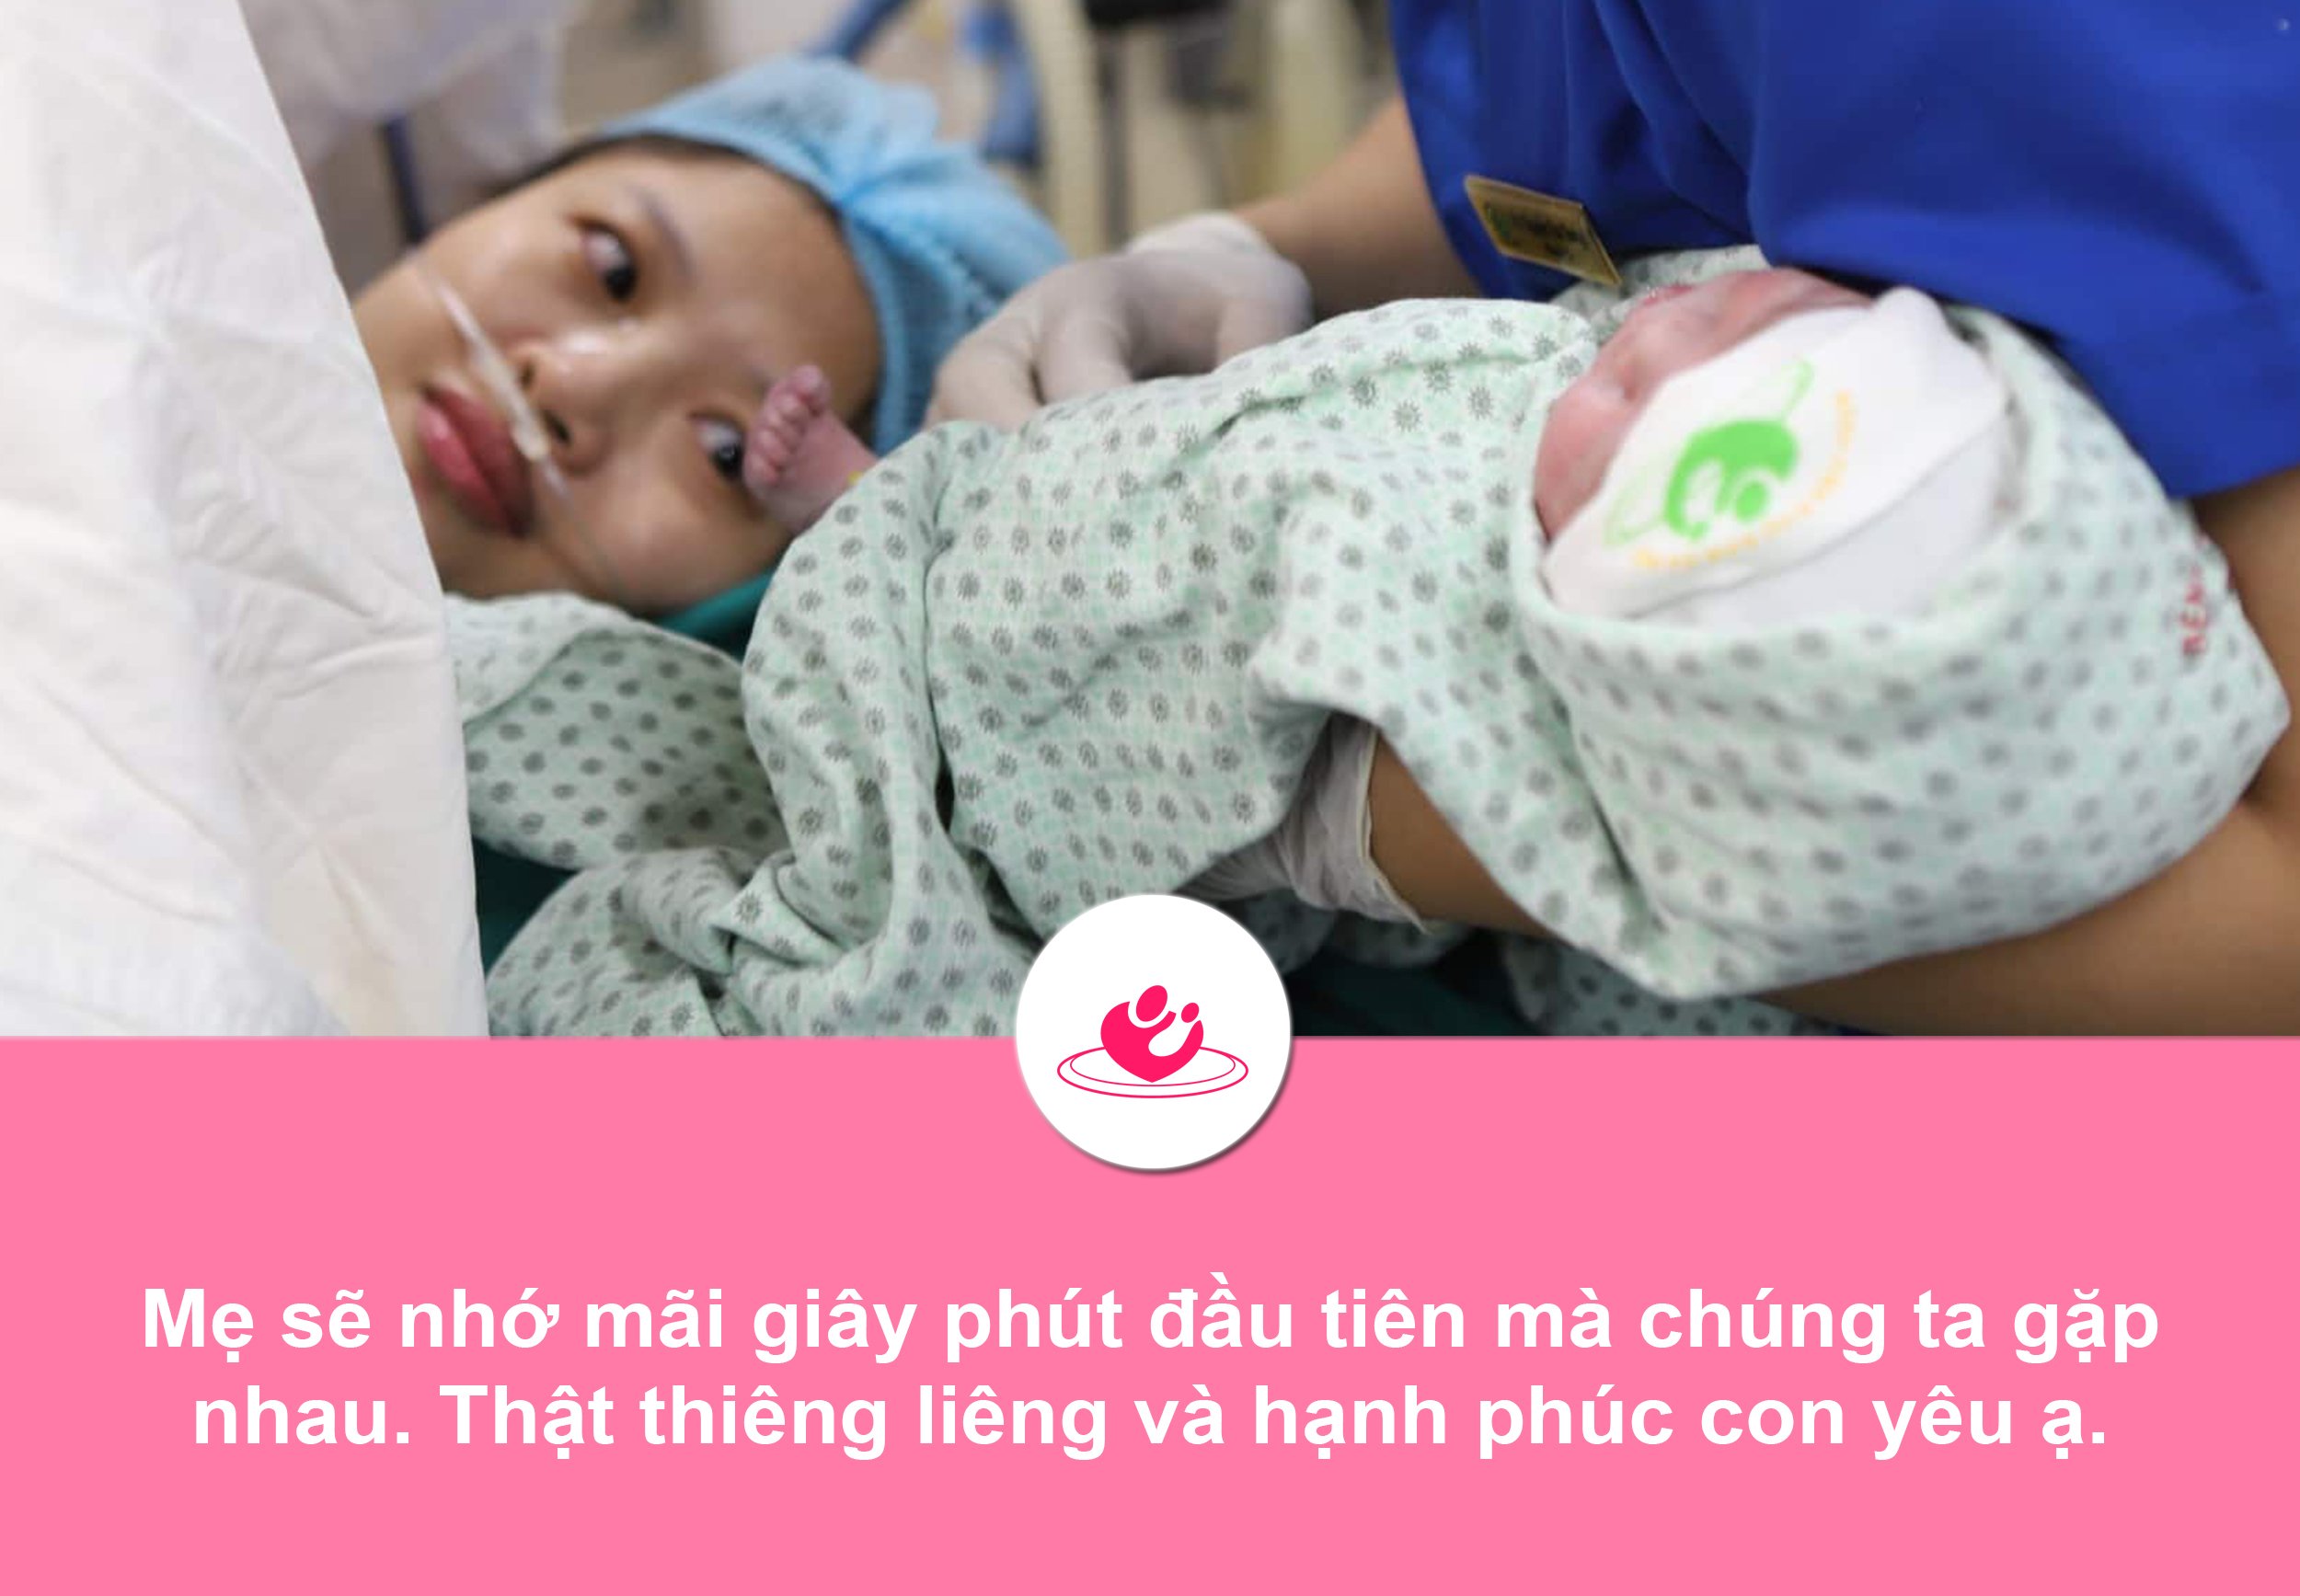 Những khoảnh khắc không thể quên của người mẹ khi sinh con ở Bệnh viện Phụ sản Hà Nội 8